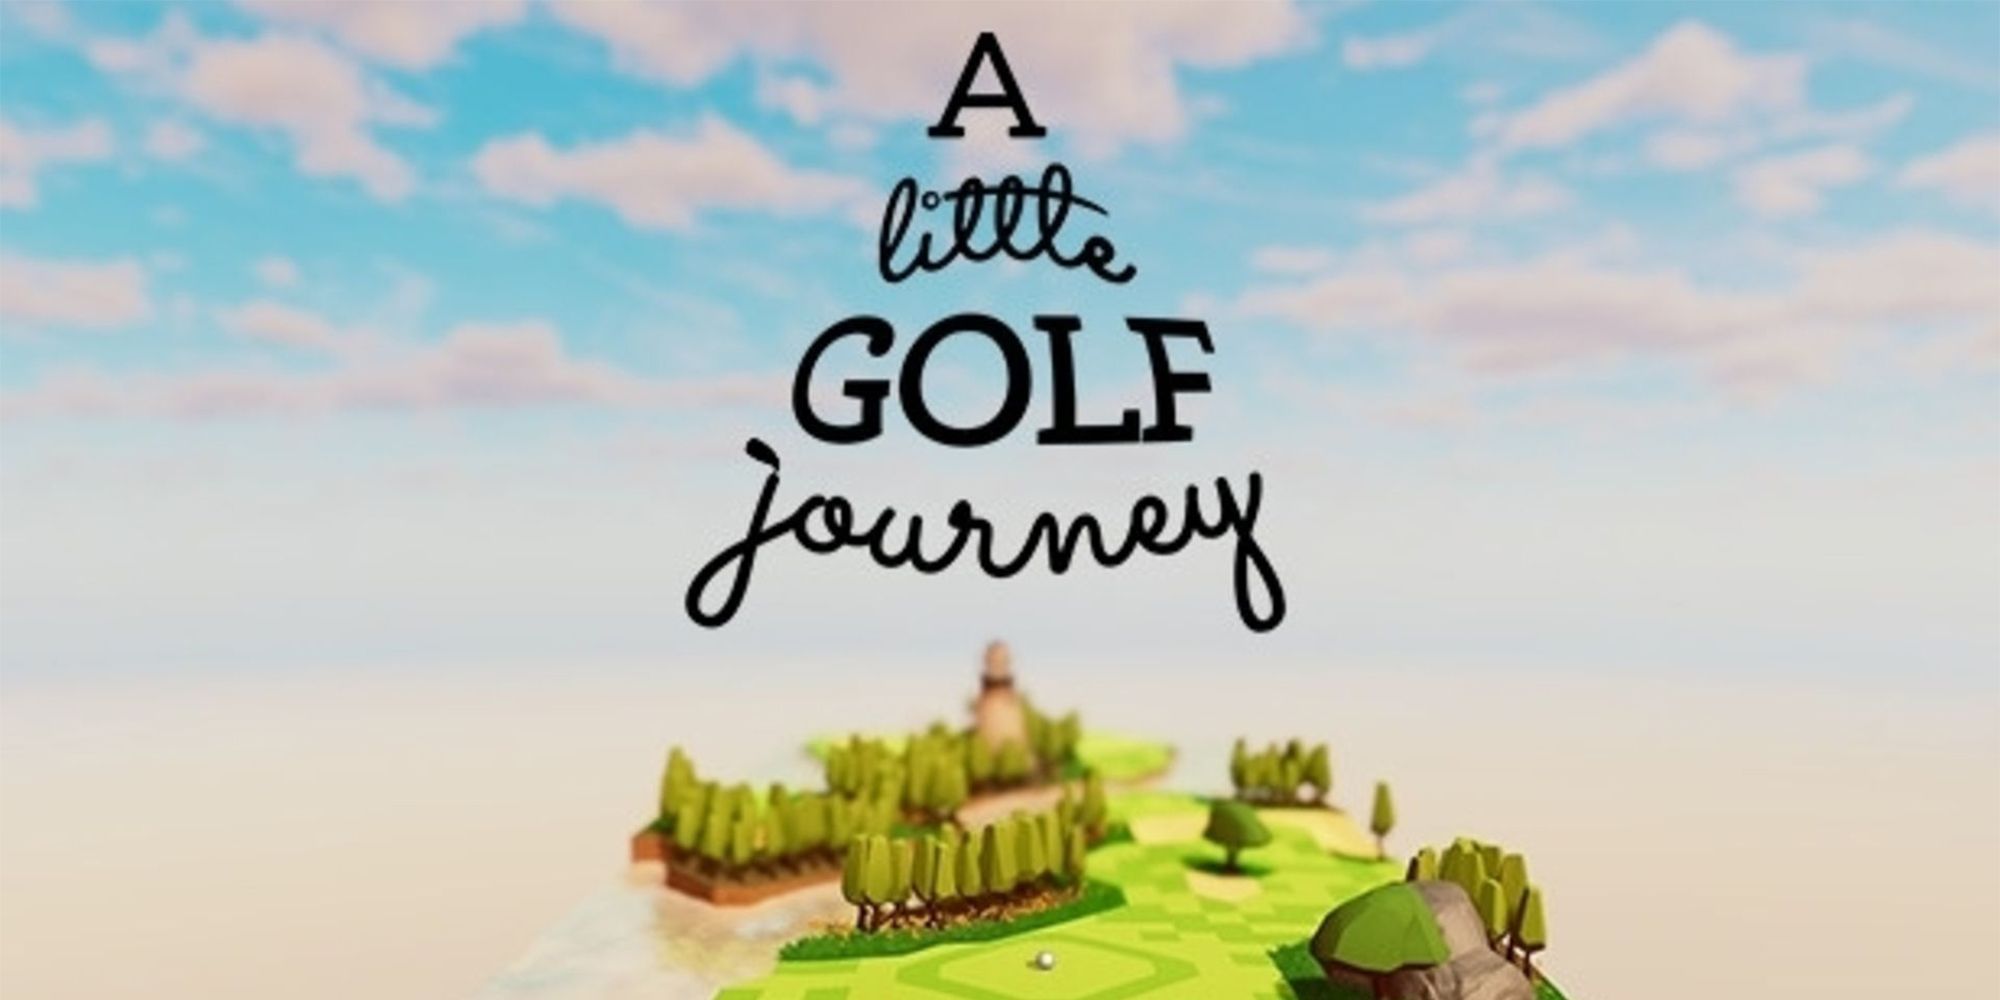 Revisión de un pequeño viaje de golf: sereno, creativo y conmovedor